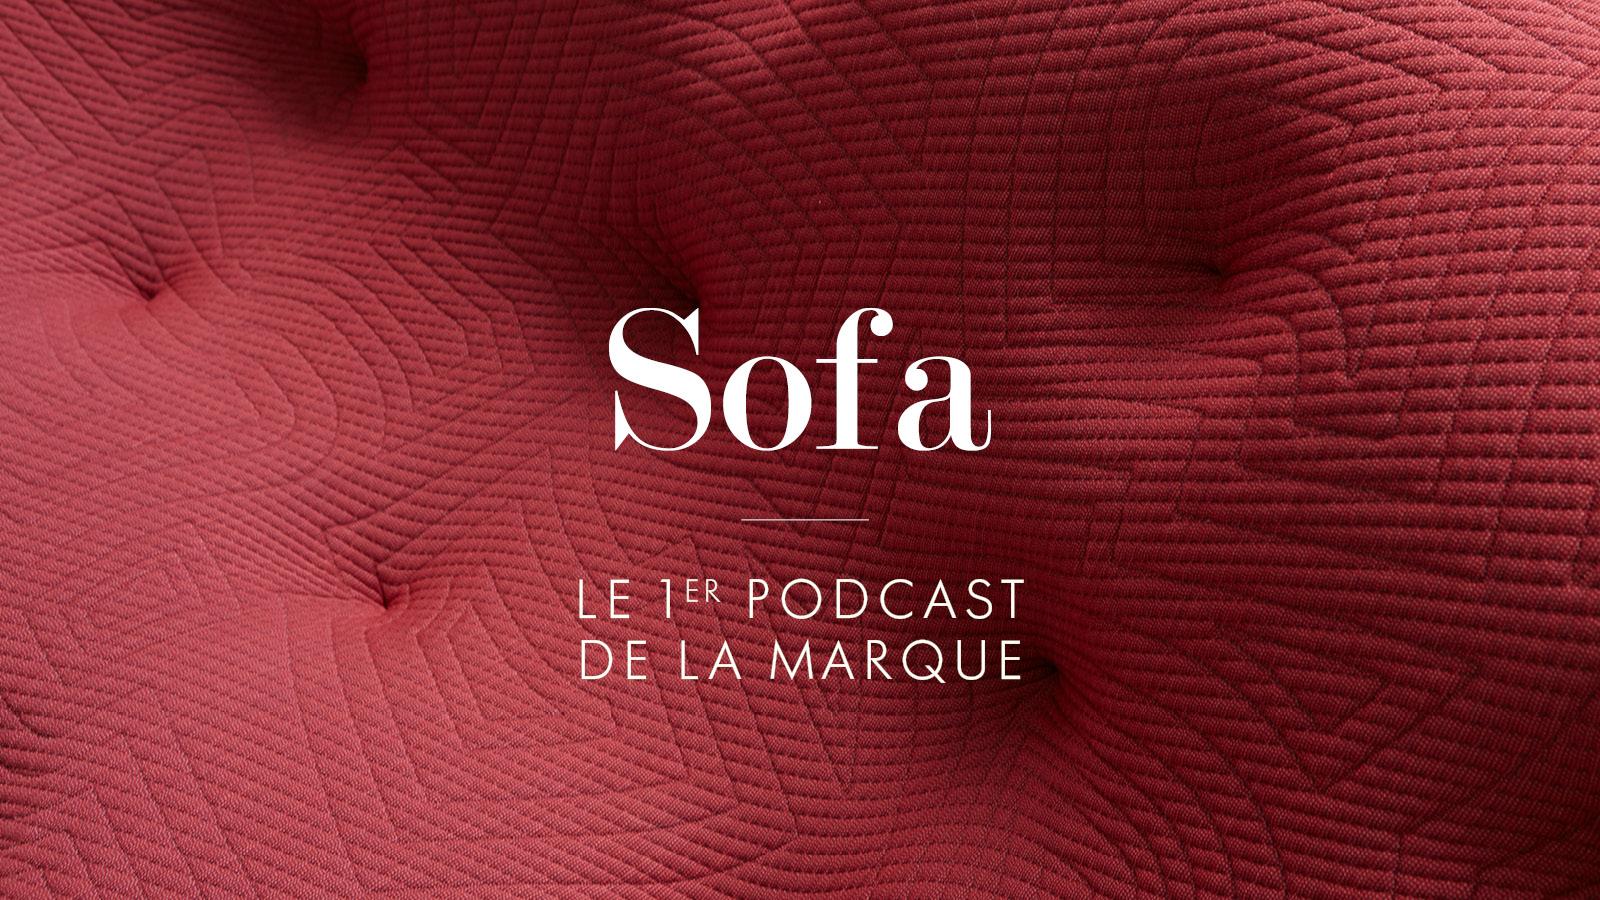 Sofa, Podcast de Marque Ligne Roset